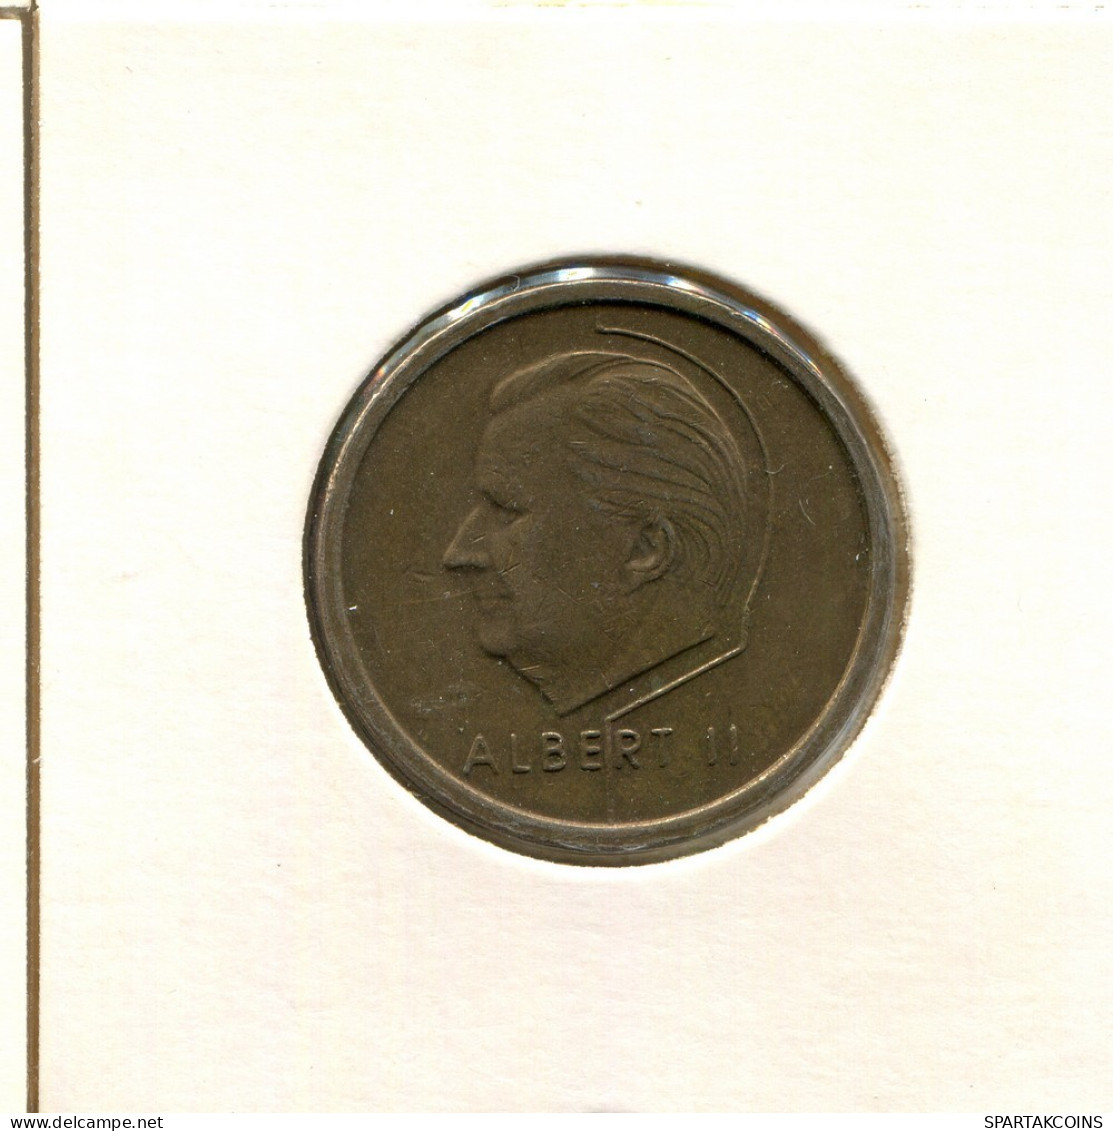 20 FRANCS 1996 DUTCH Text BELGIUM Coin #AU118.U.A - 20 Frank